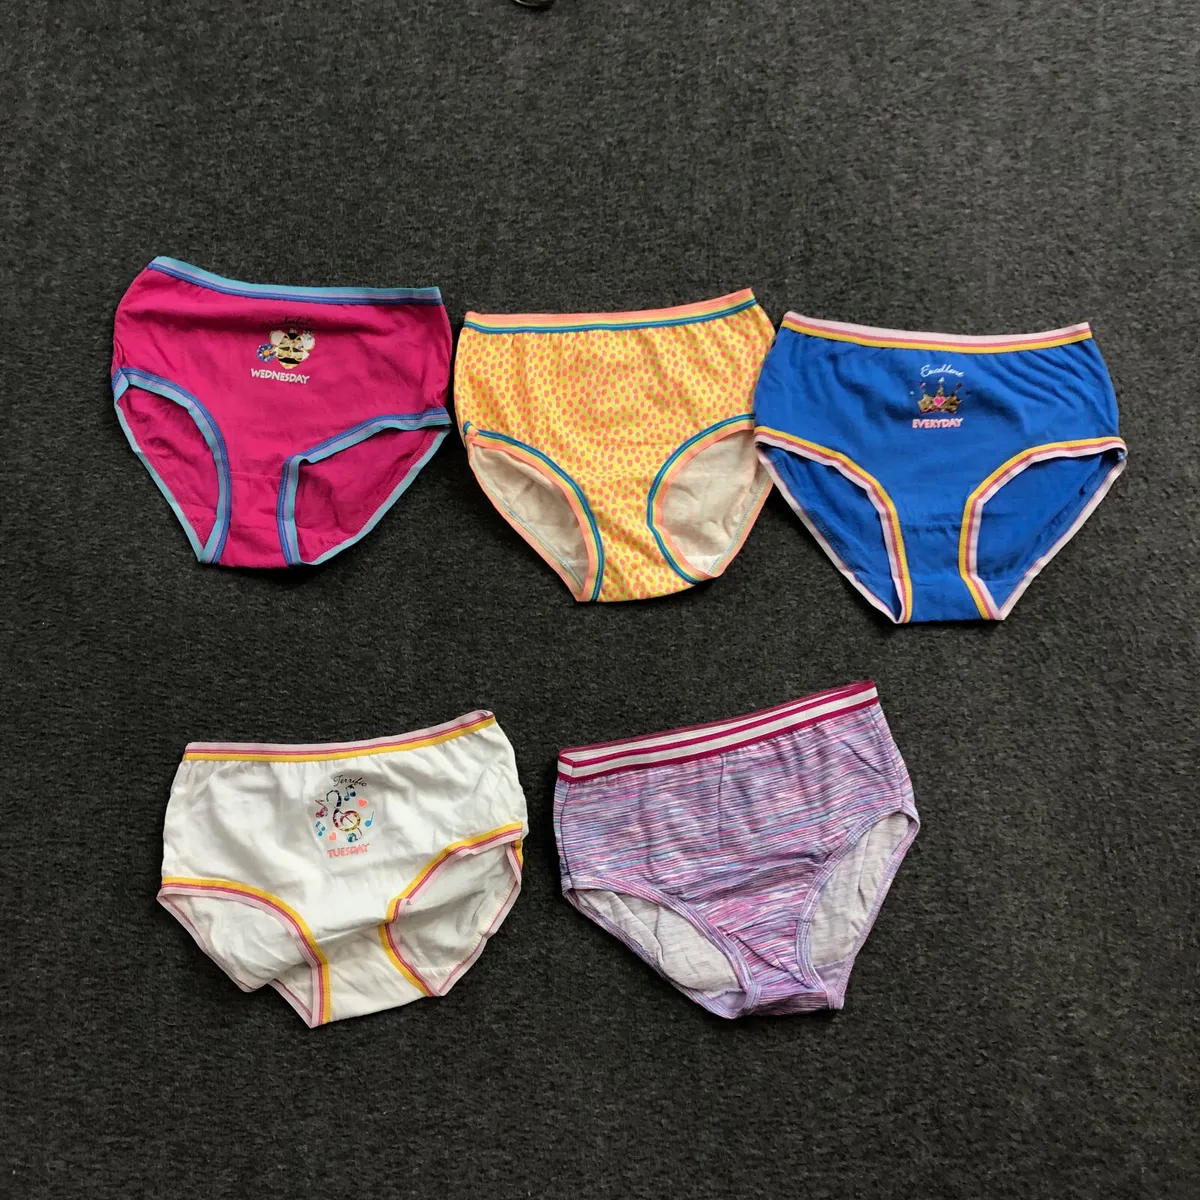 5 PACK Wonder Nation Girls Assorted Underwear Panties Multicolor Sz Medium  NWOT